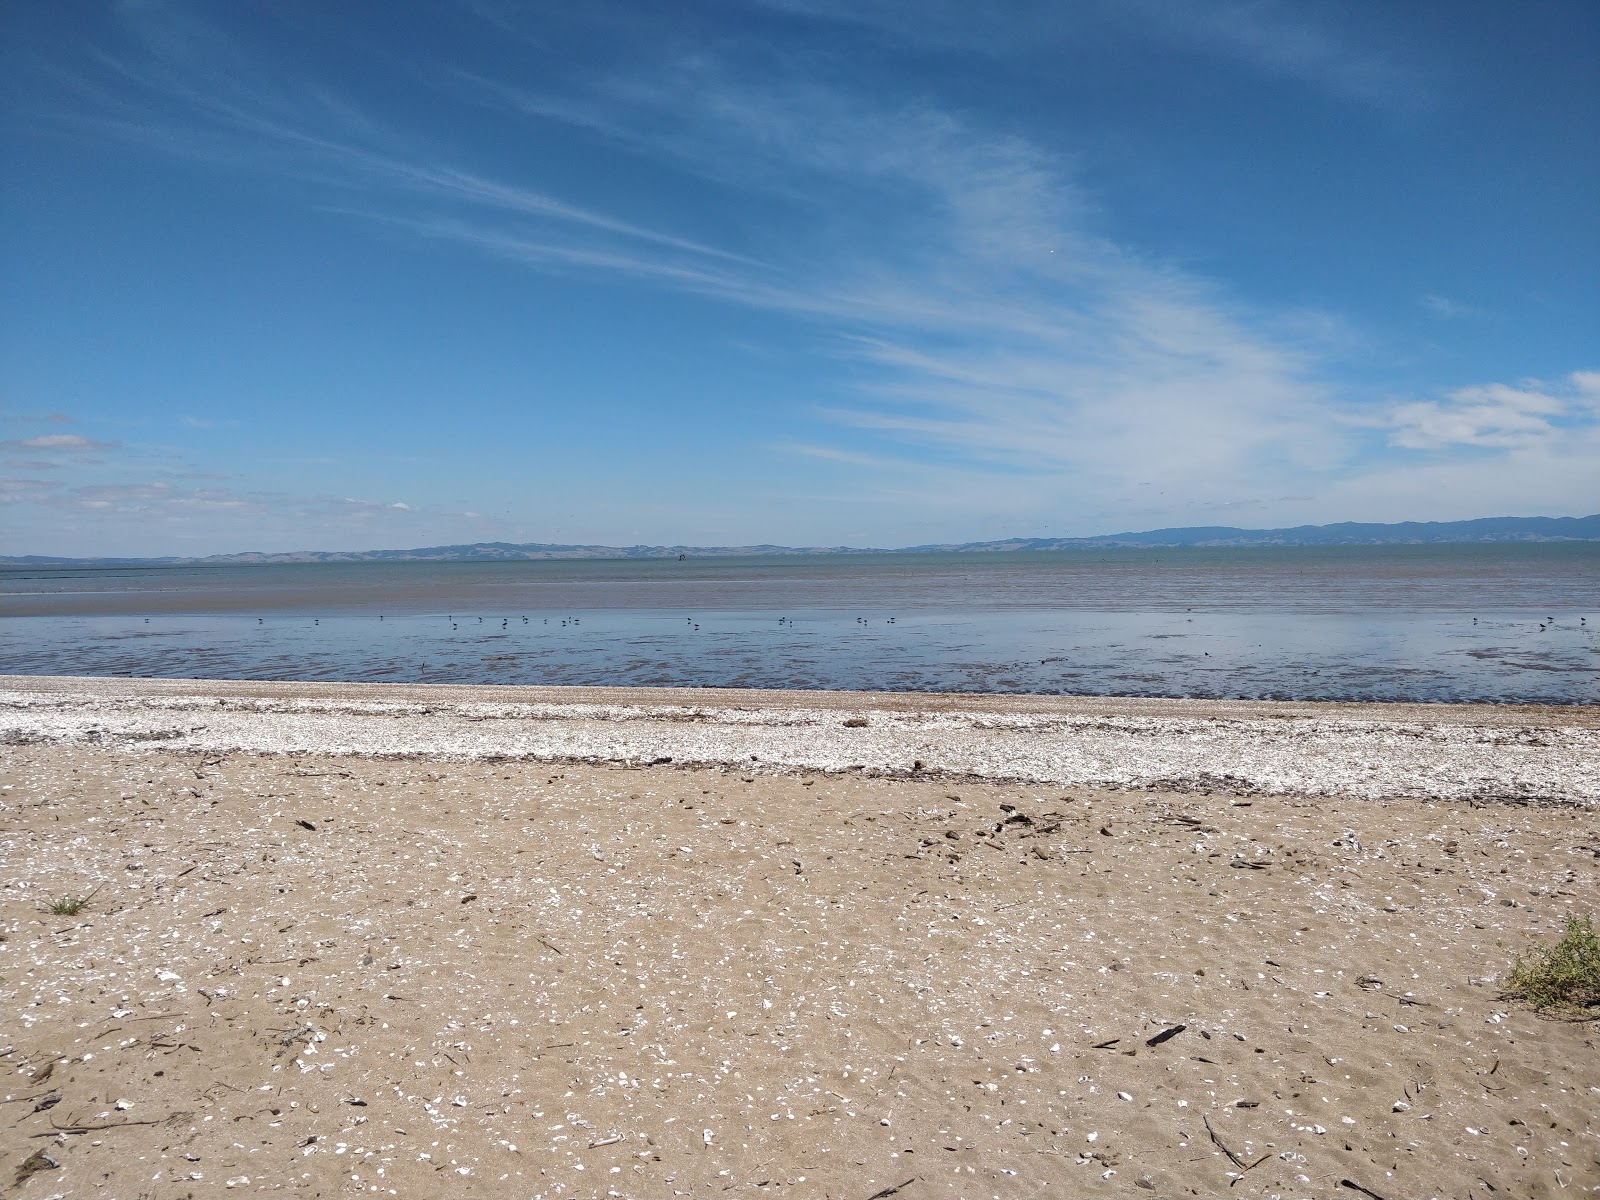 Kuranui Bay'in fotoğrafı geniş plaj ile birlikte